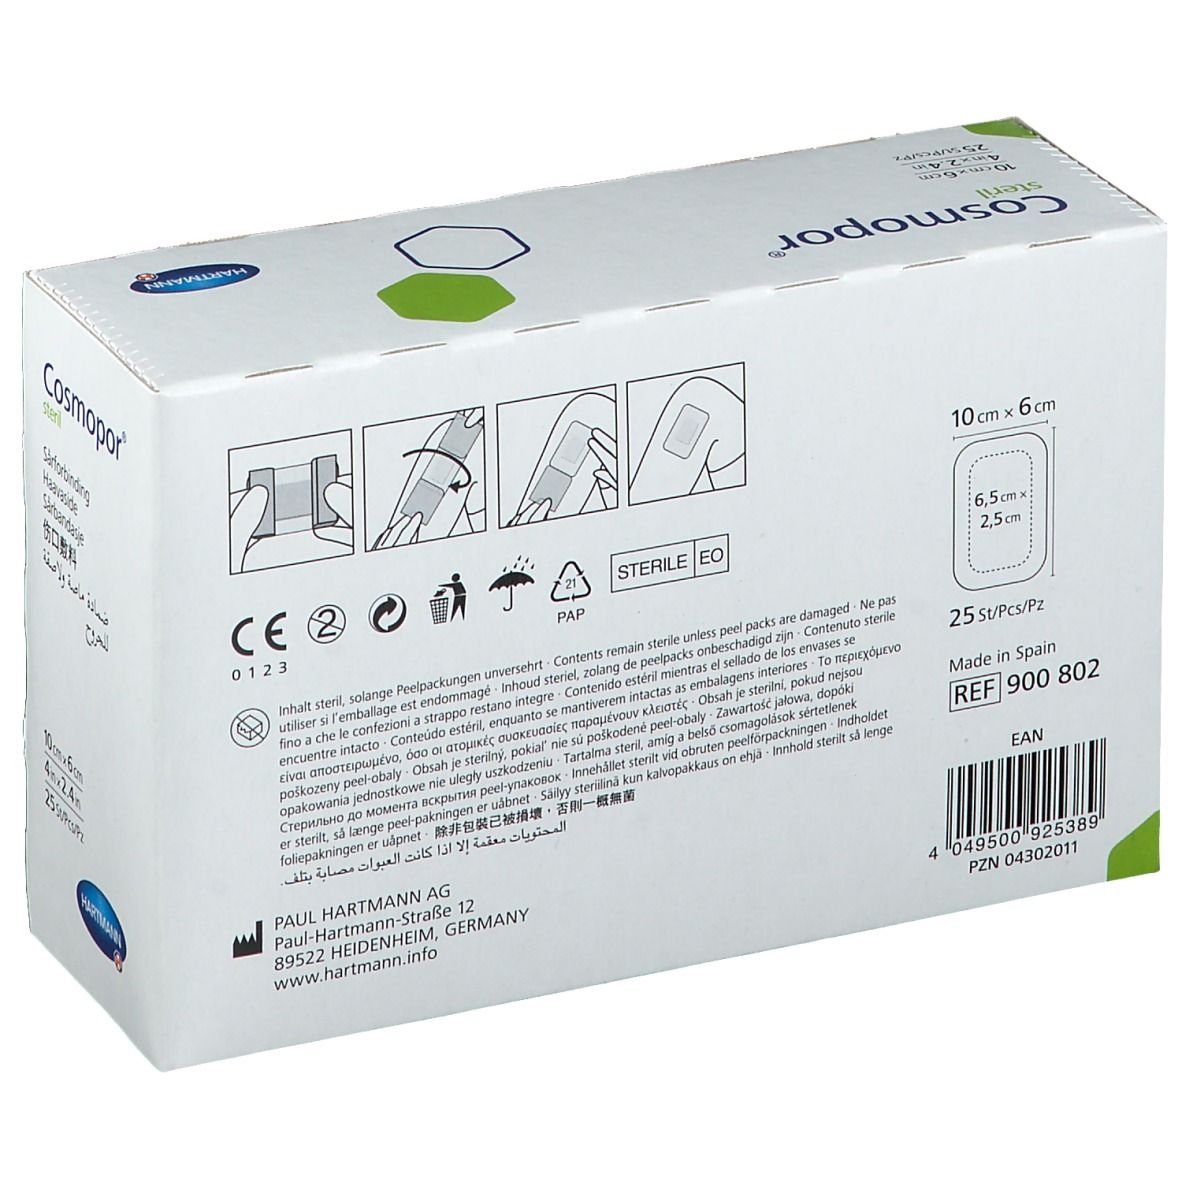 Cosmopor® steril 6 x 10 cm